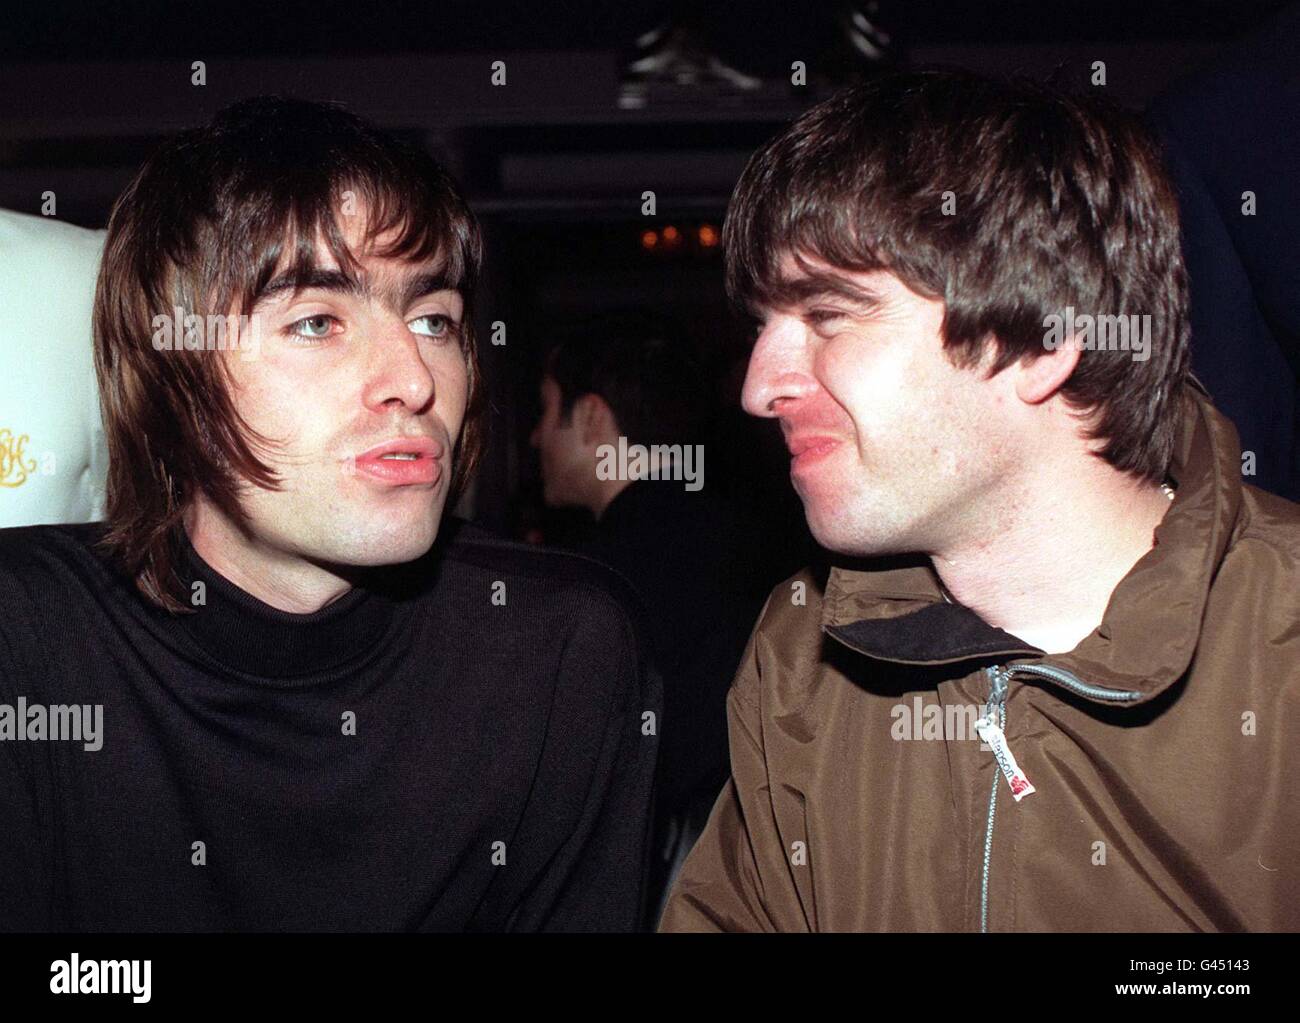 Die Stars von Oasis sind Liam und Noel Gallagher, die heute (Fr) bei den Musikpreisen des Q Magazine in London gezeigt wurden. Liam, Frontmann von Oasis, erhielt im Namen der Band den Titel „Best Act in the World“ zum 10. Jahrestag der Preisverleihung. Siehe PA Story SHOWBIZ Awards. Foto von Fiona Hanson/PA. 30/04/03 : Oasis Stars Liam (links) und Noel Gallagher. Der Hit der Band aus dem Jahr 1995 wurde laut den Hörern von Virgin Radio zum größten Song der letzten zehn Jahre gekürt. Musikfans wurden gebeten, ihre Lieblingslieder der letzten 10 Jahre zu wählen, um den zehnten Jahrestag von Virgin Radio zu feiern. Stockfoto